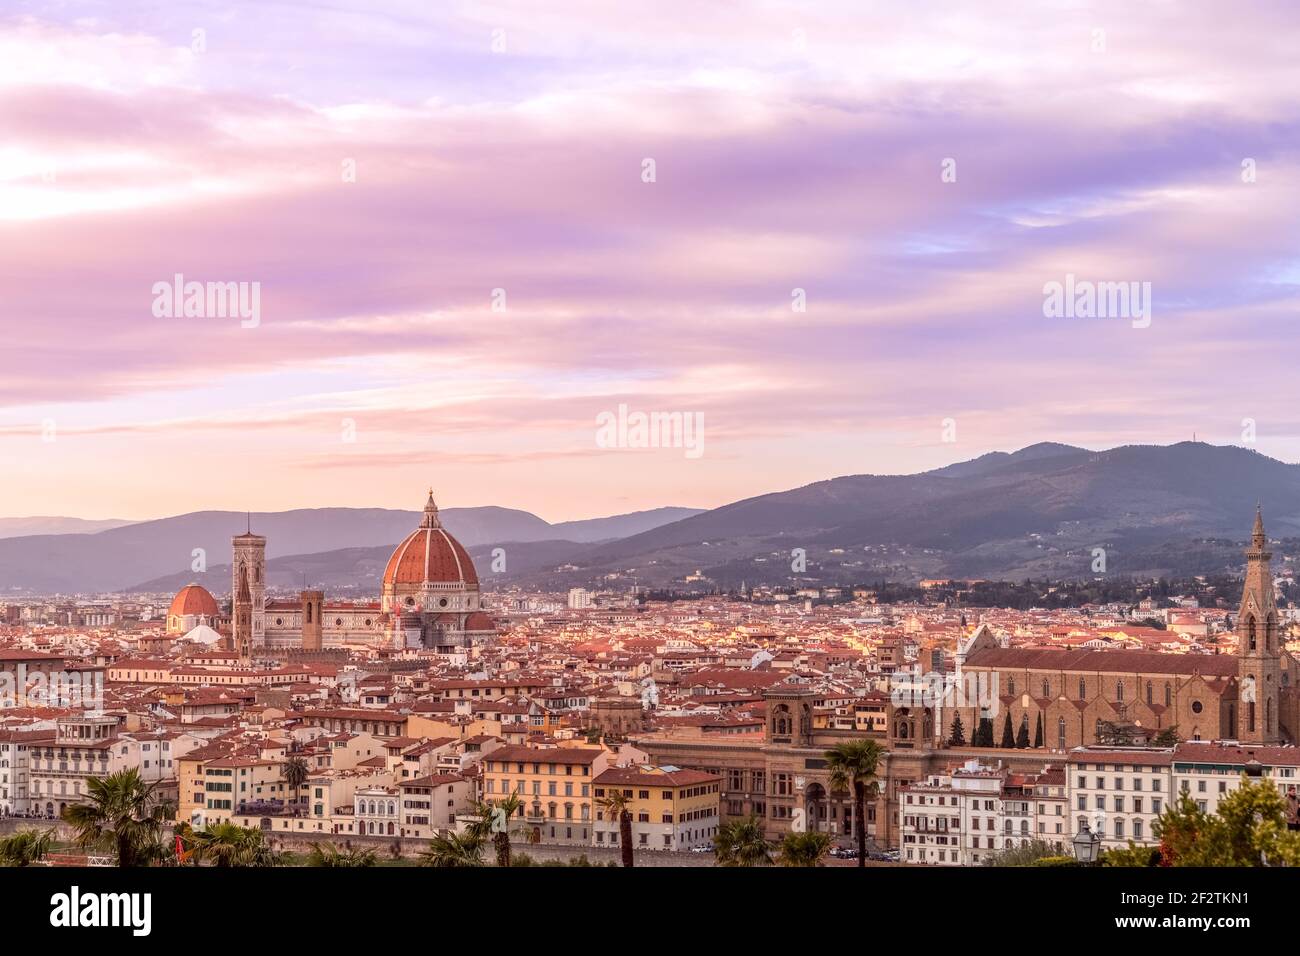 Impresionante puesta de sol sobre el centro histórico de Florencia y la famosa catedral (Duomo Santa Maria del Fiore) Toscana, Italia Foto de stock